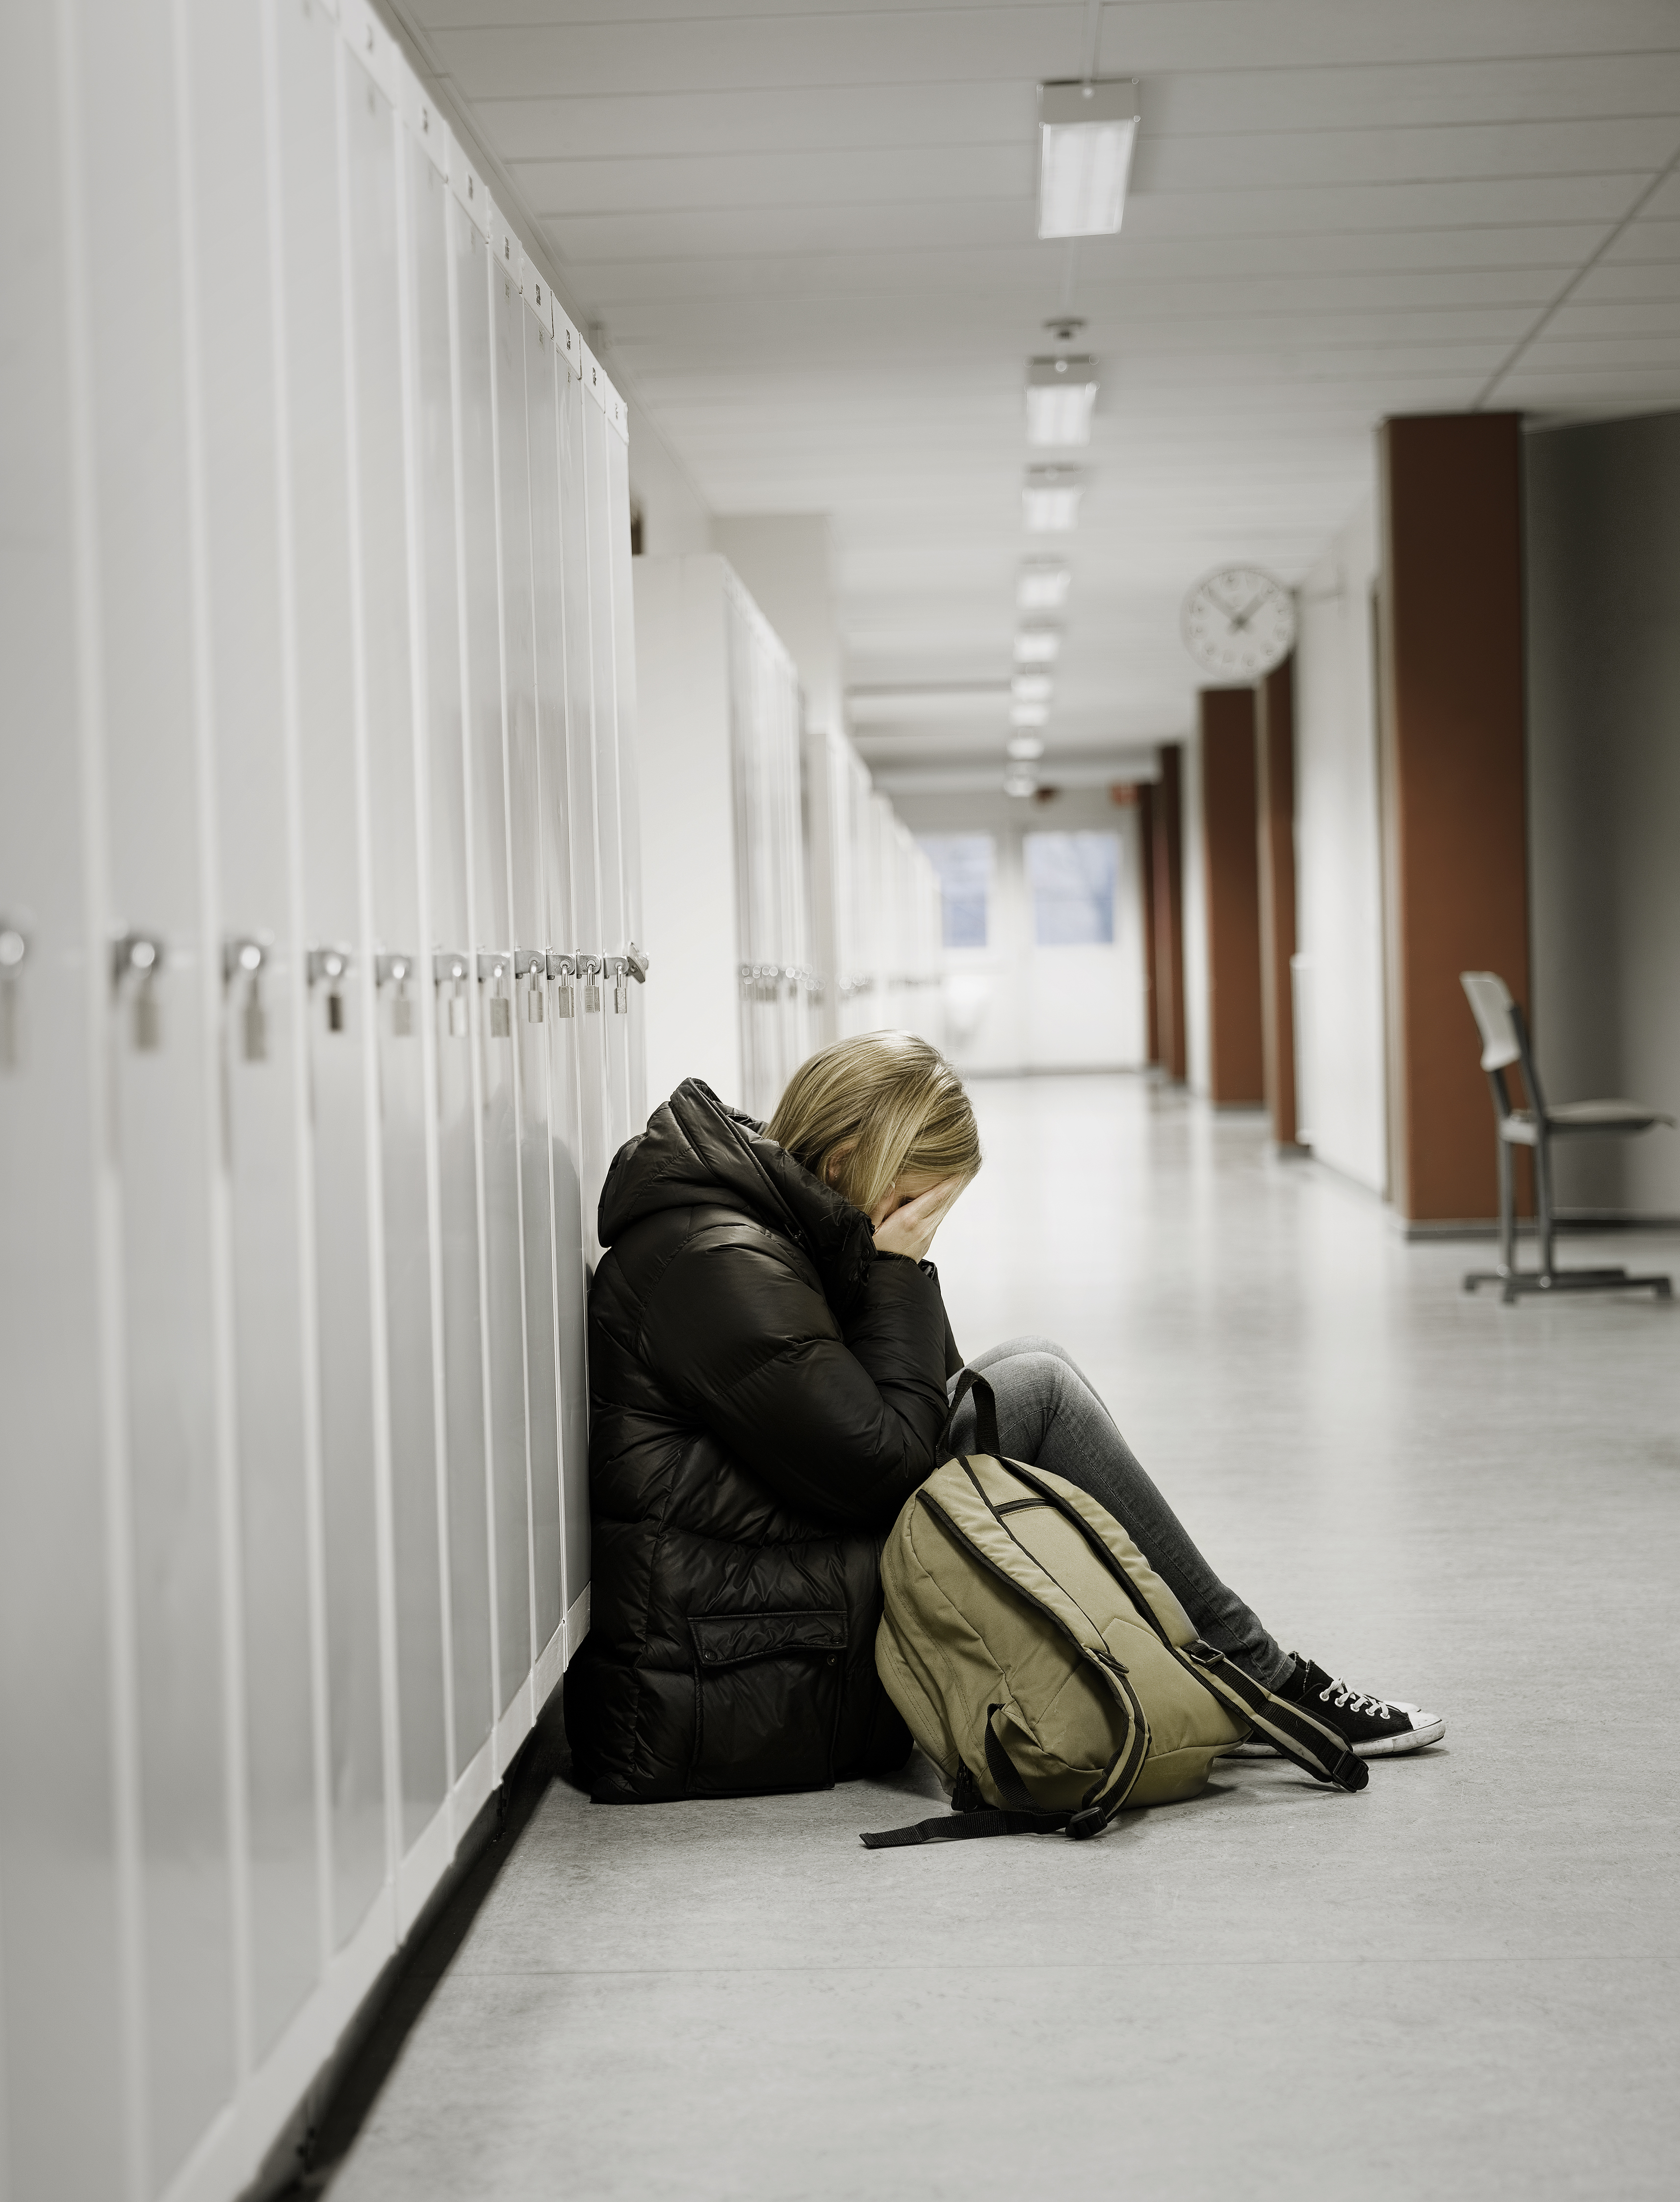 Joven llorando junto a las taquillas de la escuela. | Fuente: Shutterstock